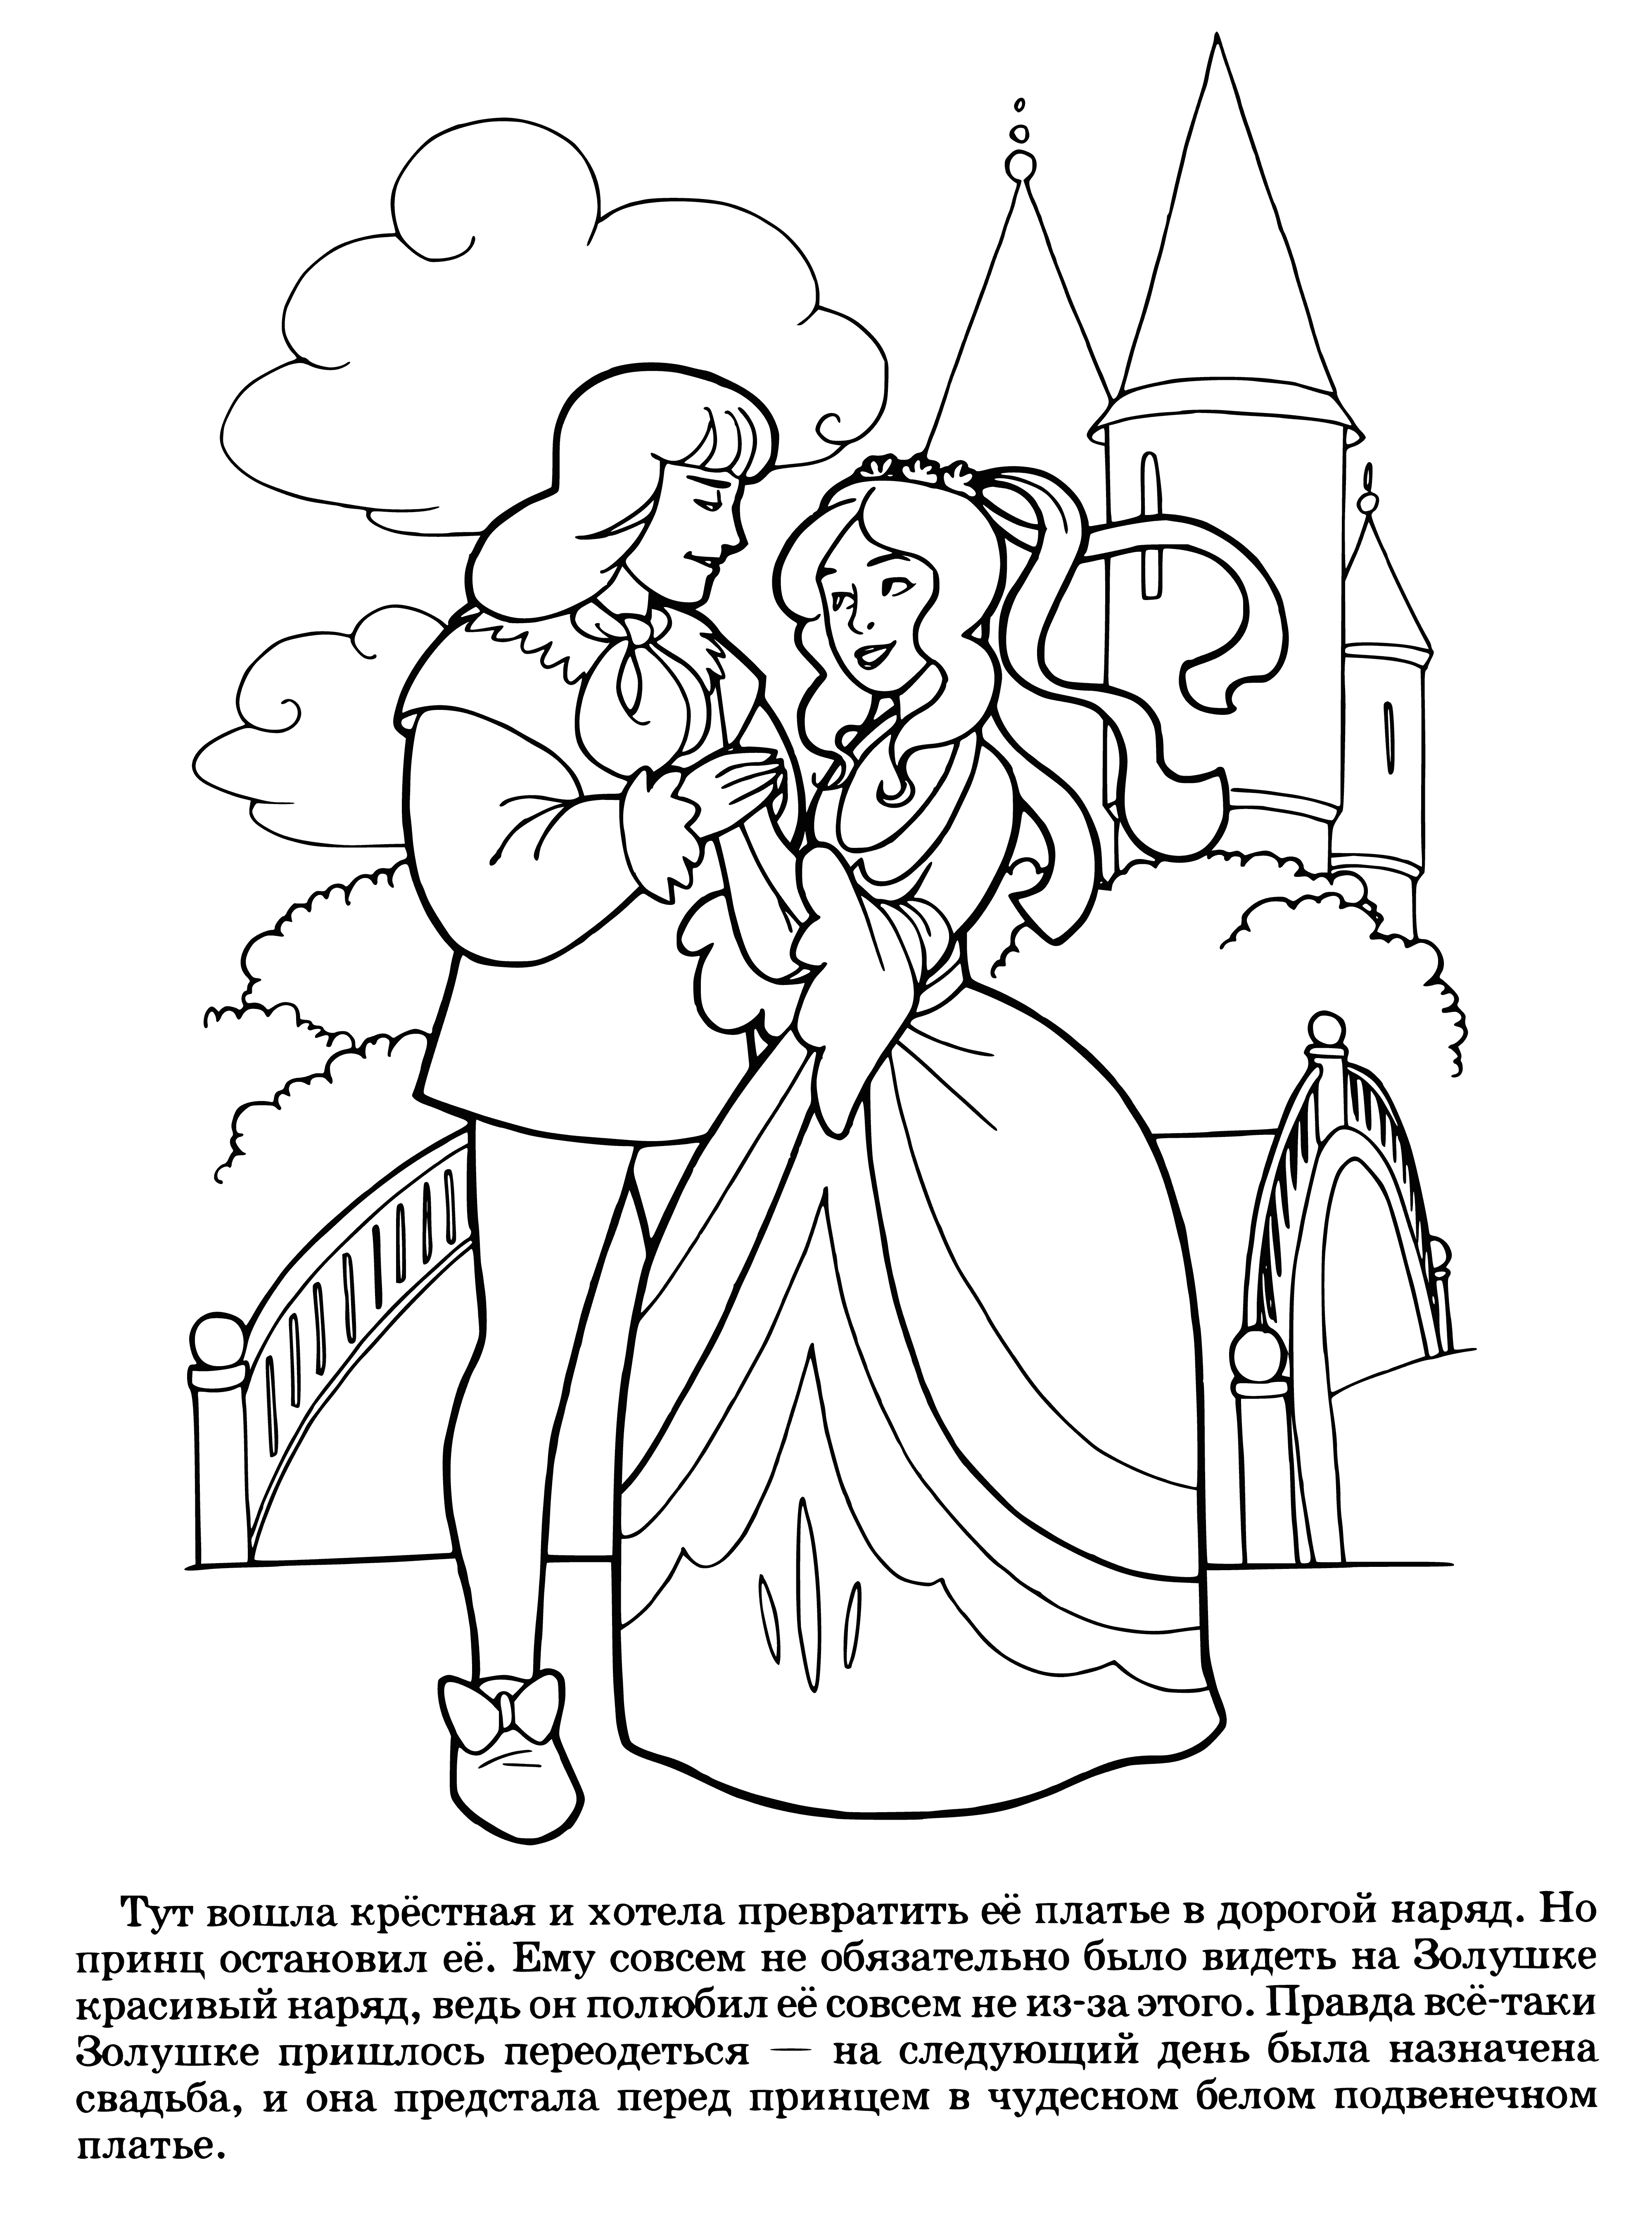 Le mariage de Cendrillon coloriage